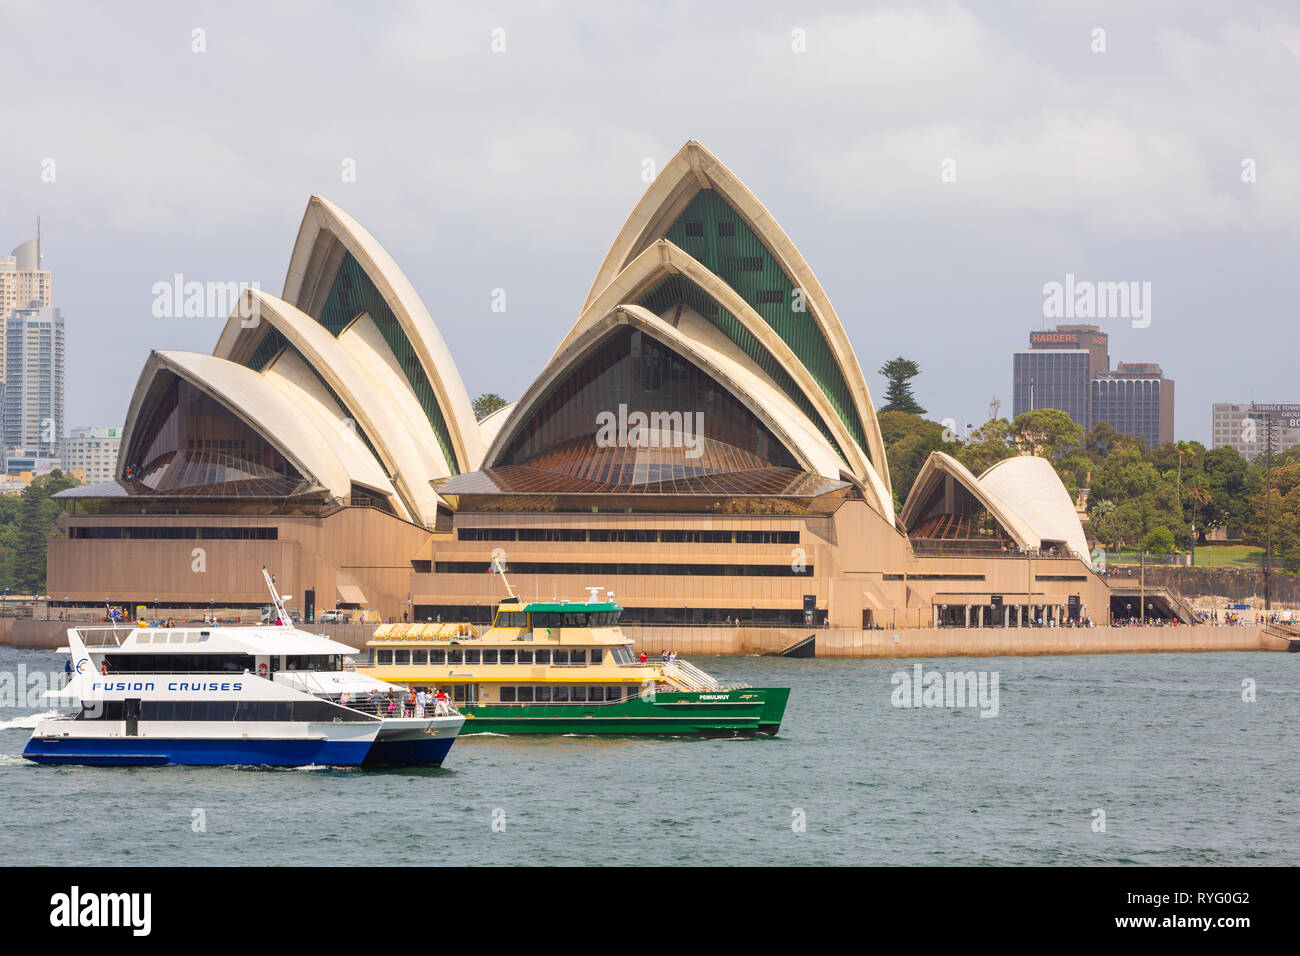 Bateau de croisière Fusion et sydney un laissez-passer par l'Opéra de Sydney, le port de Sydney, Australie Banque D'Images